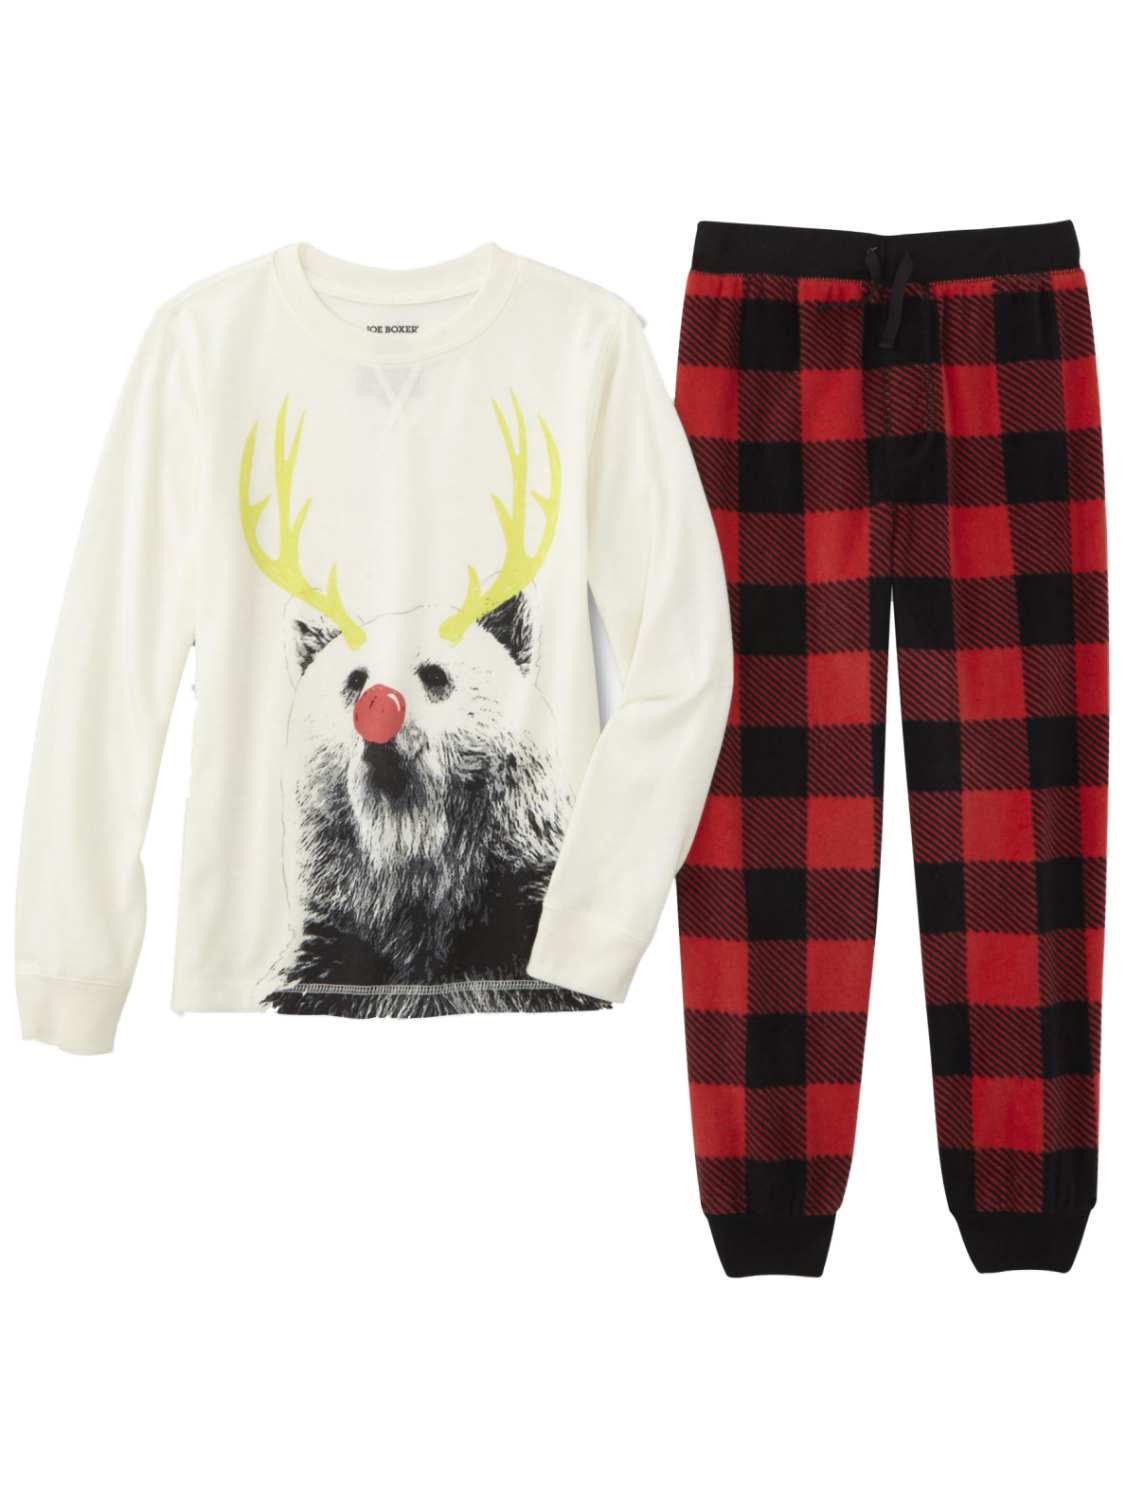 Joe Boxer Boys Red Plaid Reindeer Pajamas Christmas Sleep Set T-Shirt & Fleece Pant